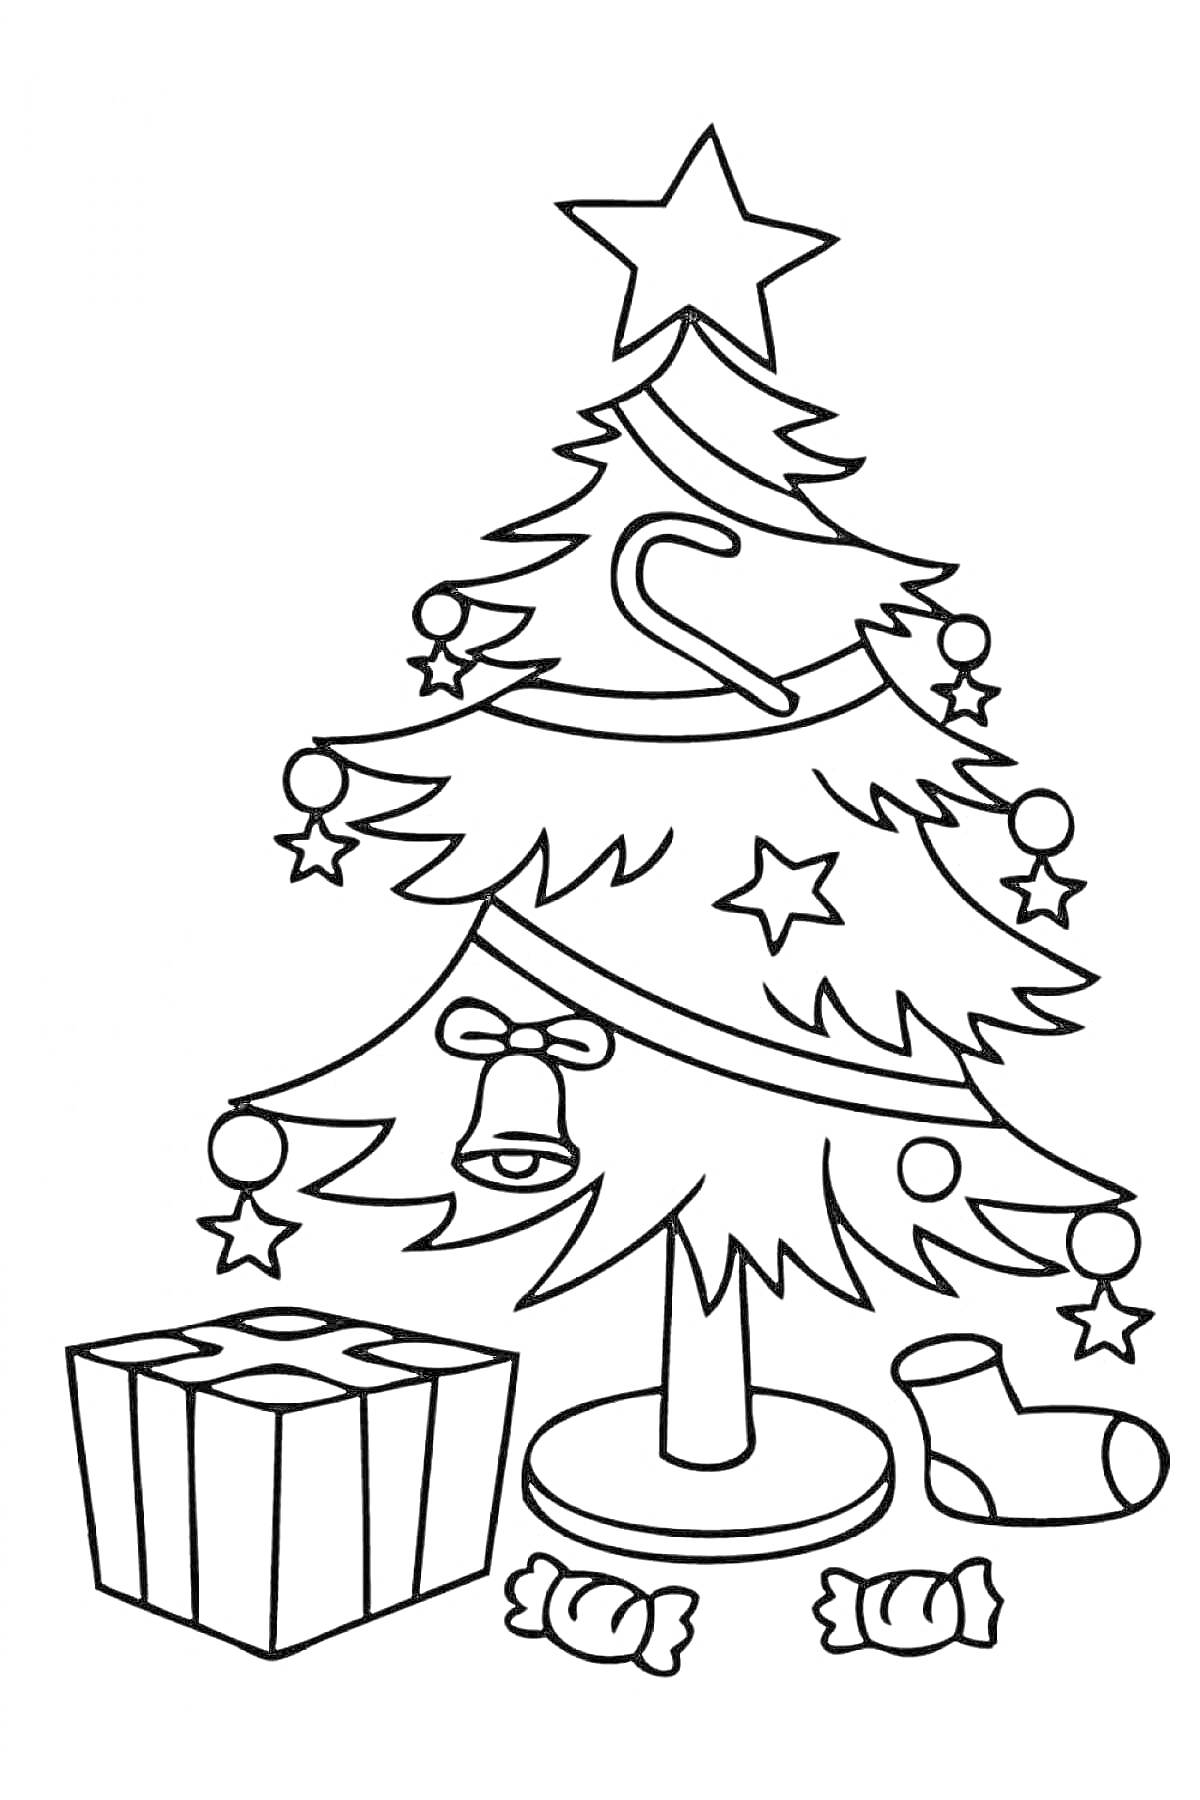 Раскраска Новогодняя елочка с украшениями, подарком и конфетами